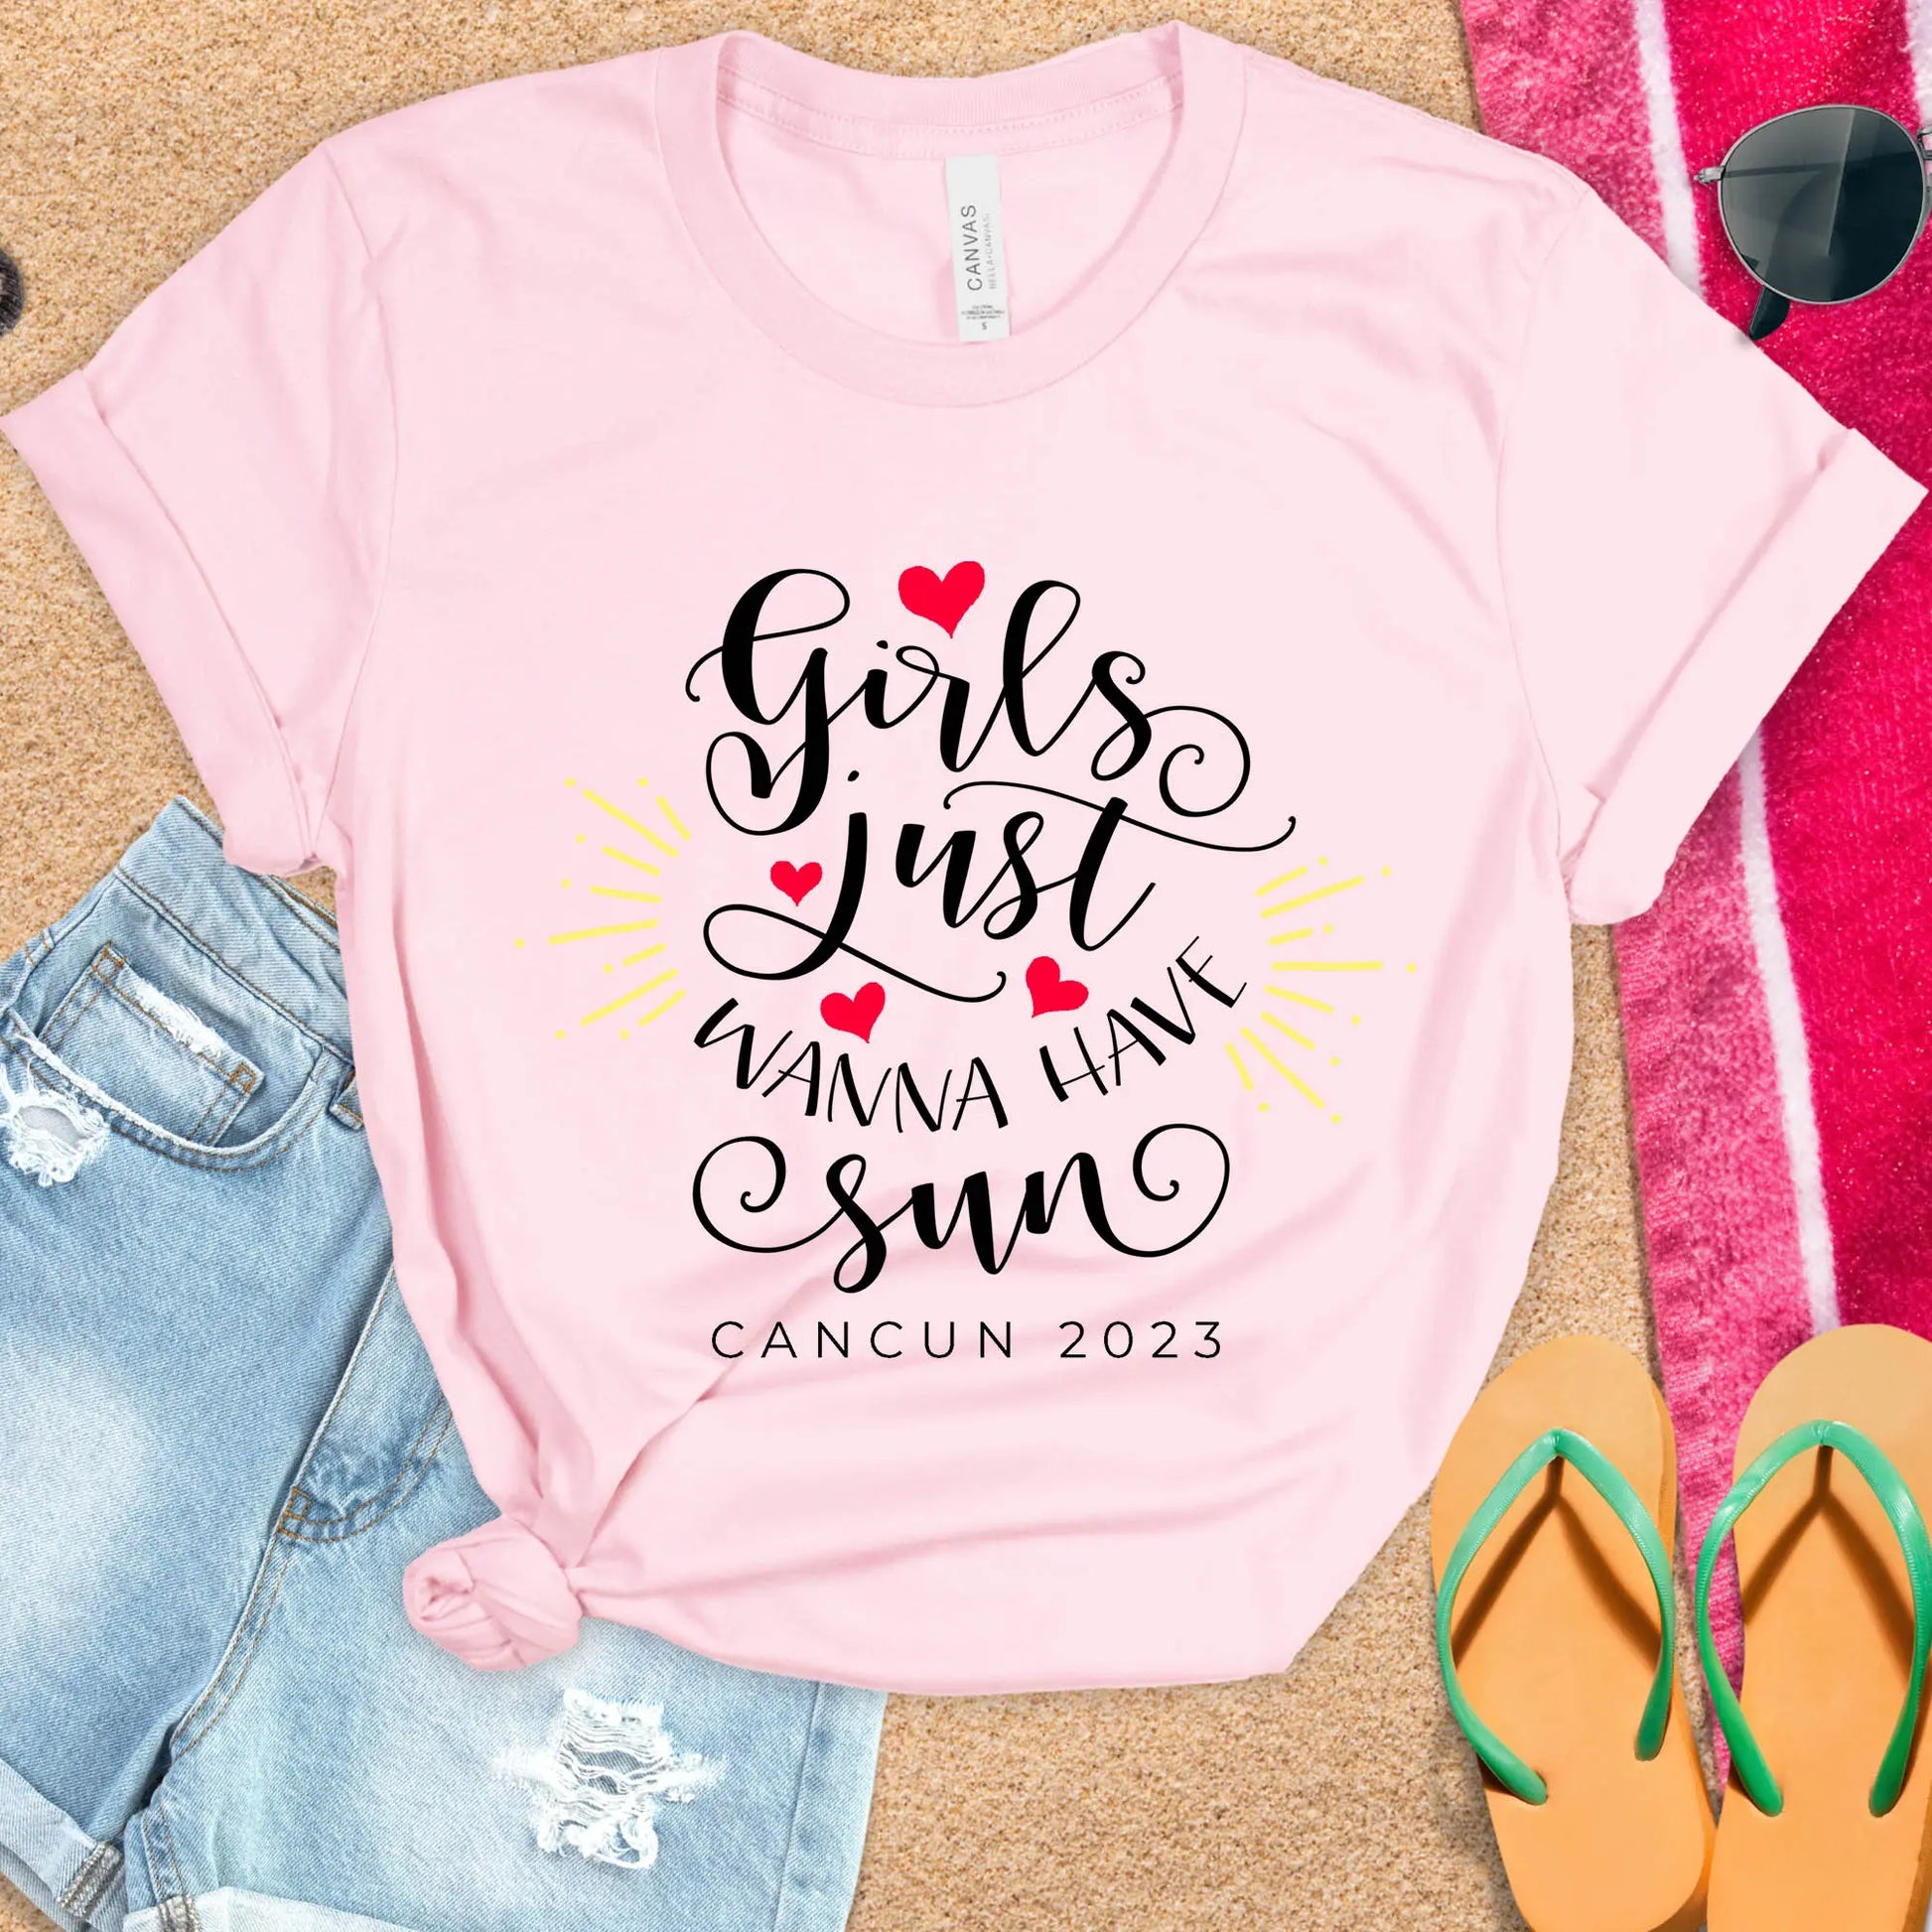 Girls Just Wanna Have Sun Unisex t-shirt, Friends Beach Shirt, Summer Shirt, Vacation Shirt, Girls Trip T-shirt, Friends Beach Trip Shirts Amazing Faith Designs